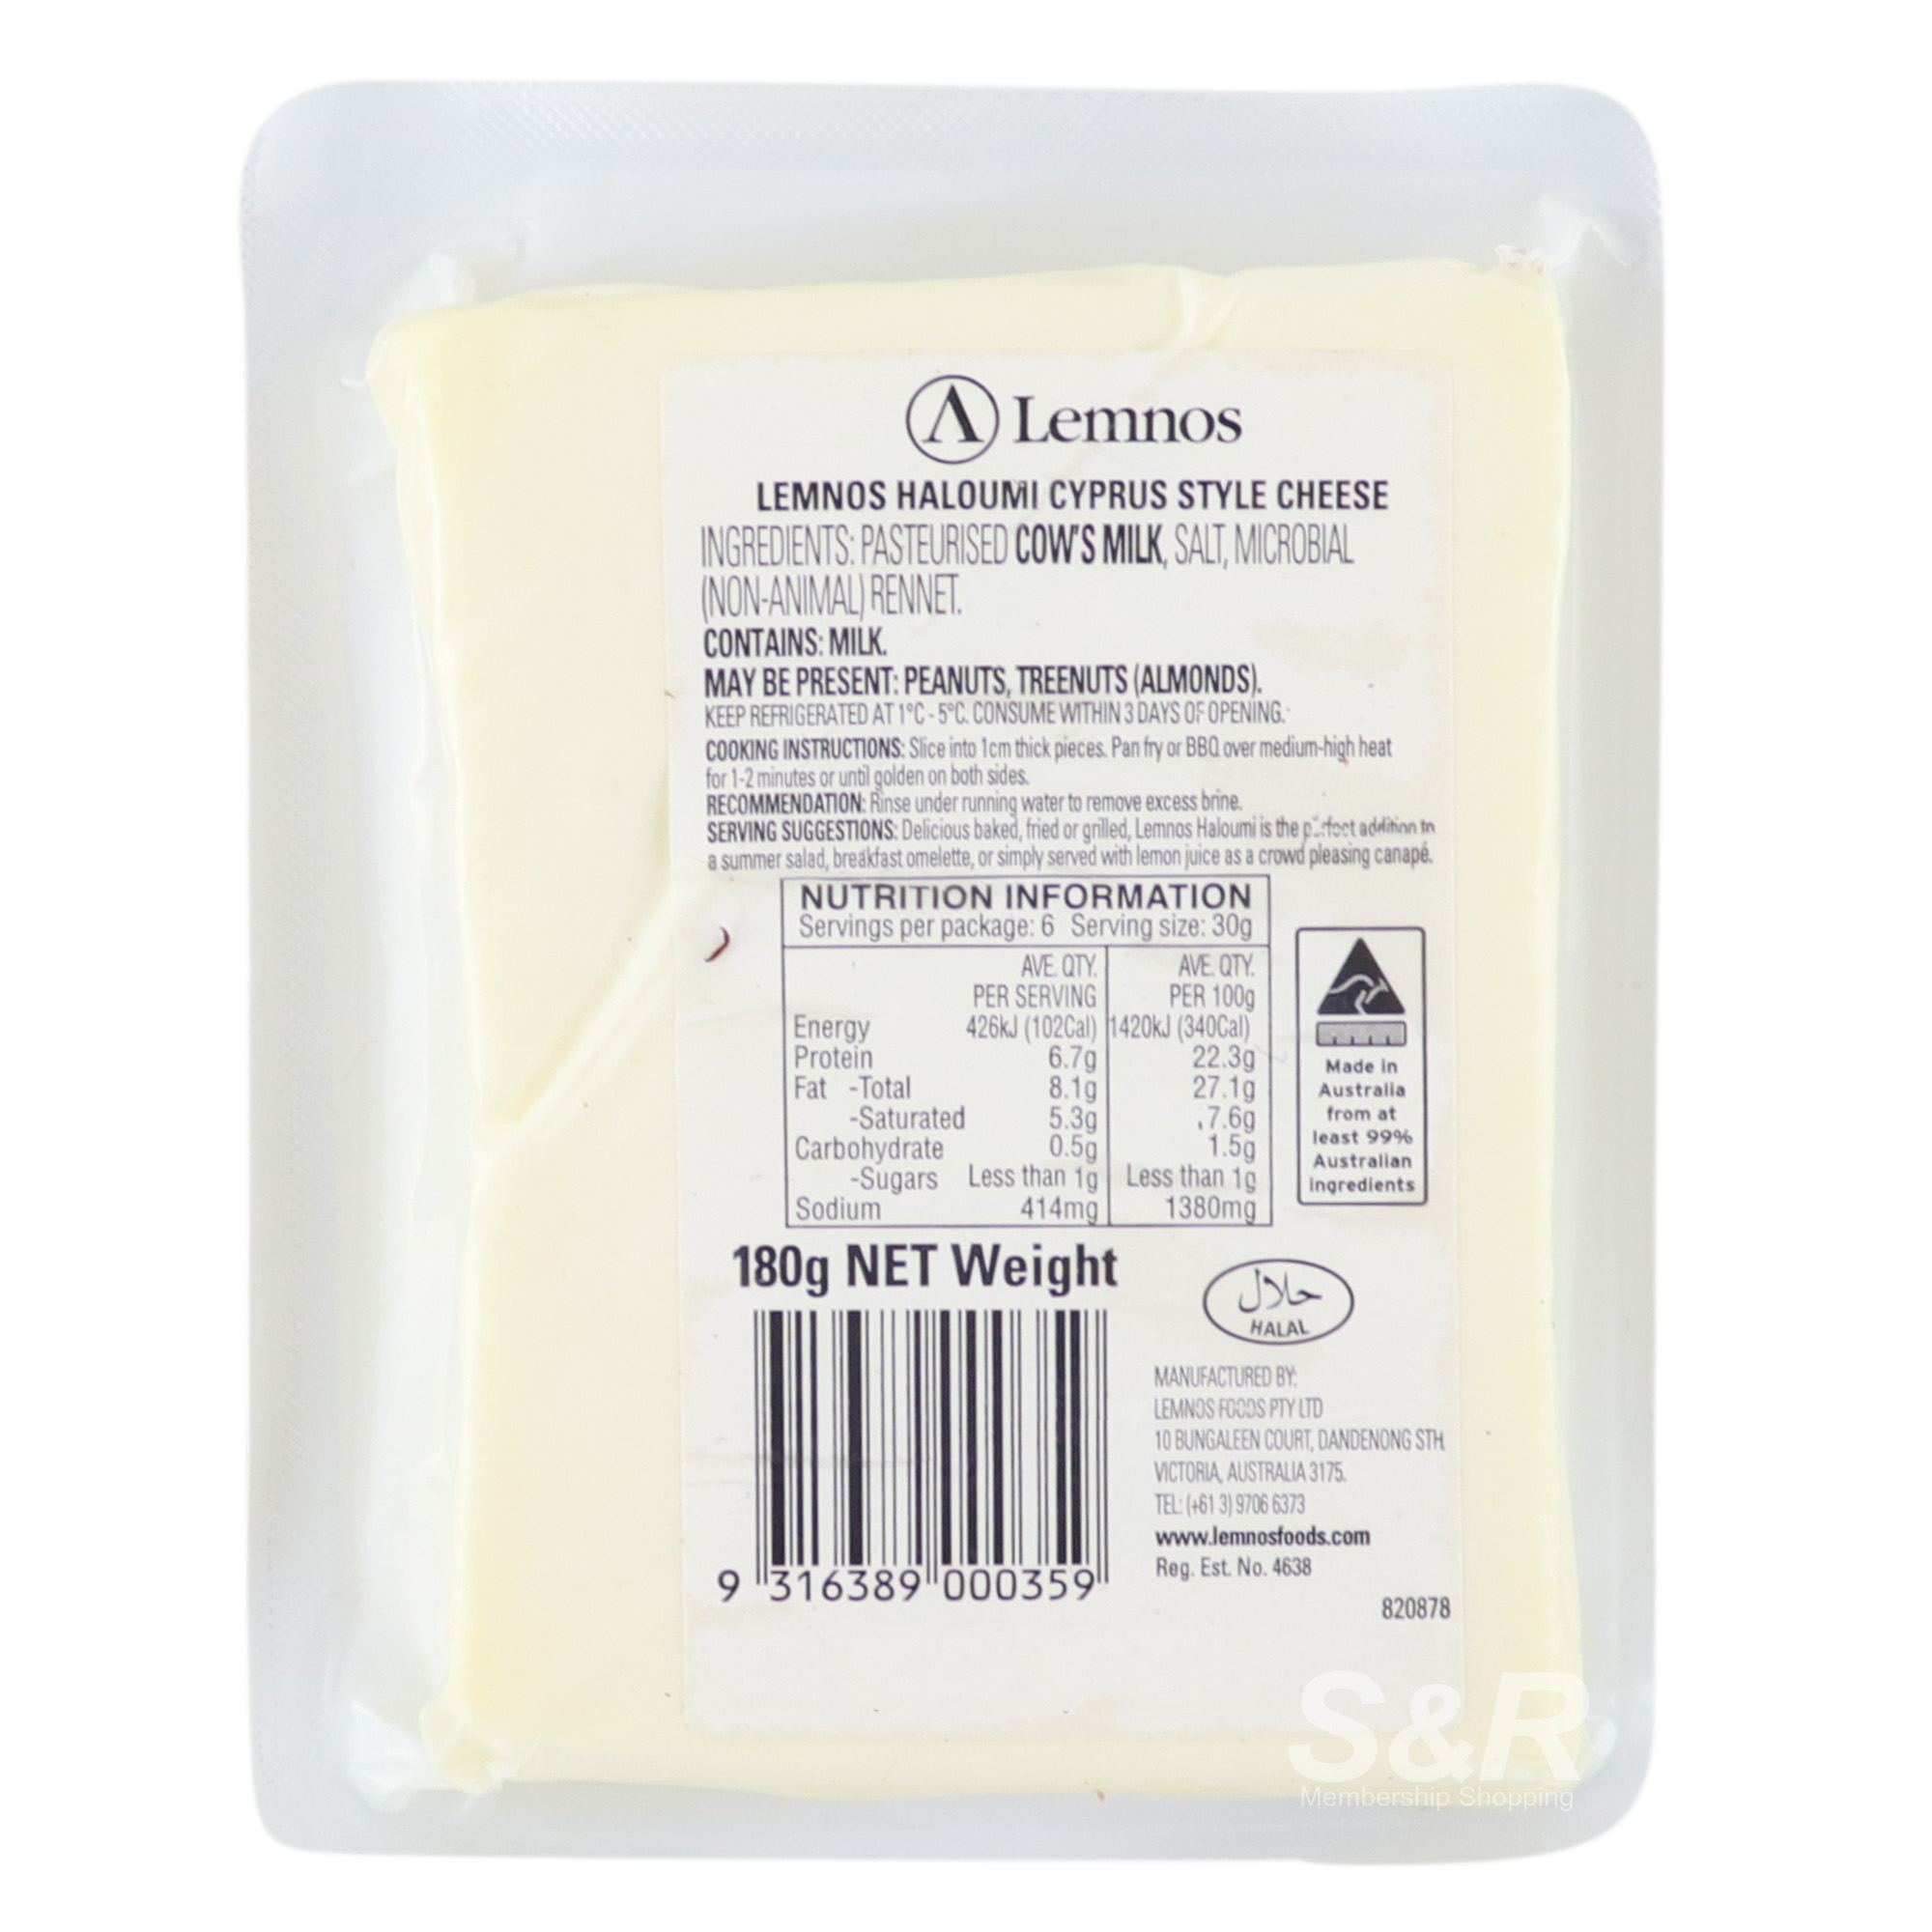 Haloumi Cheese